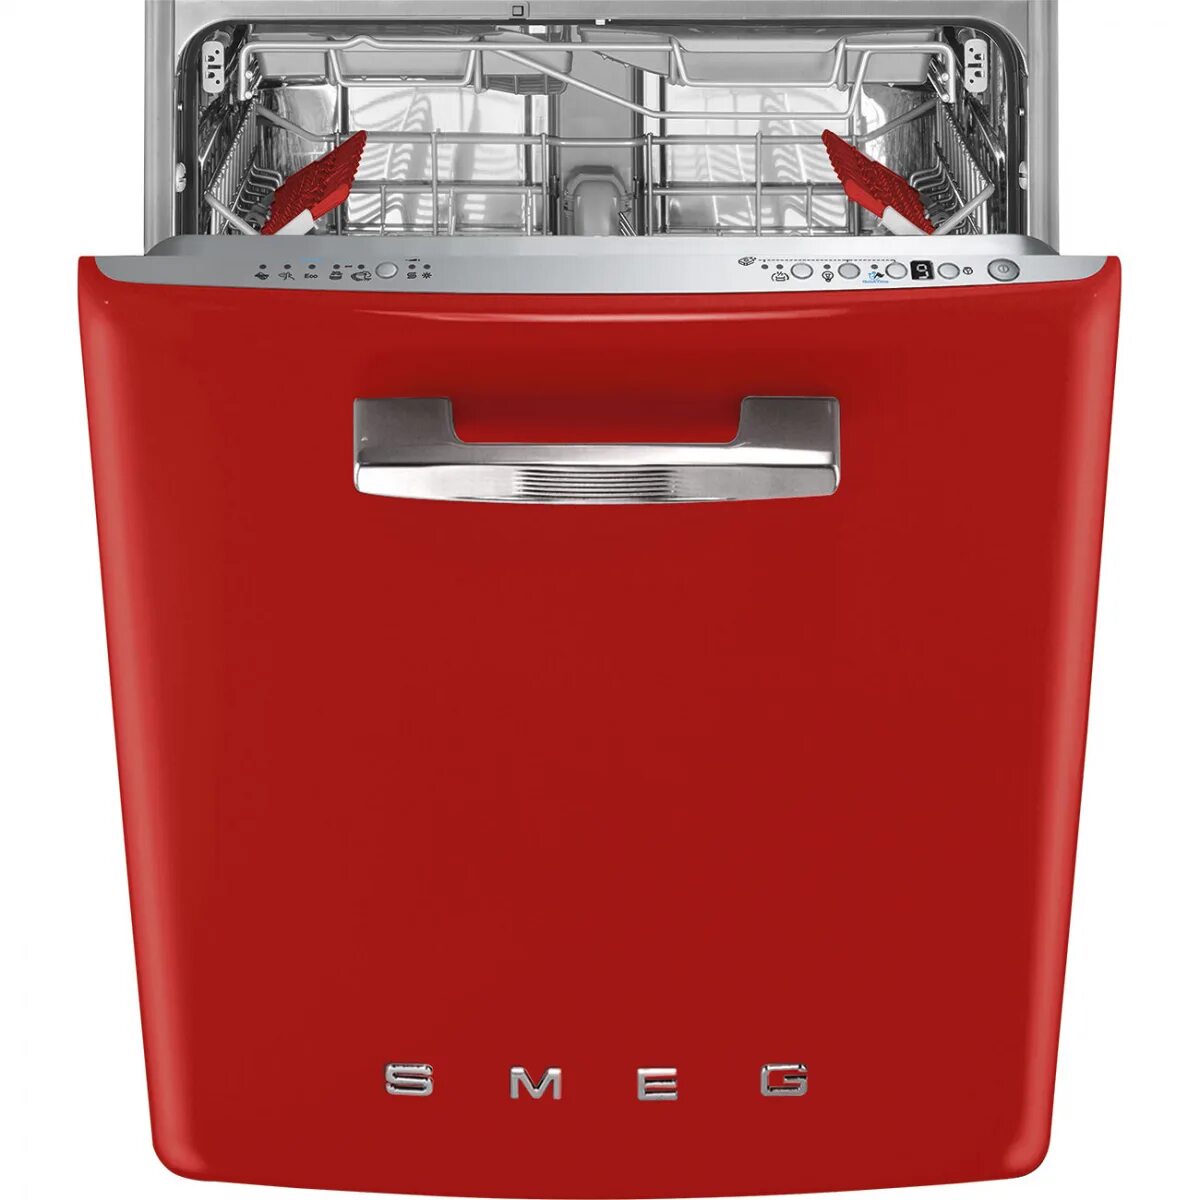 Посудомоечная машина Smeg st2fabr2. Посудомоечная машина Smeg st2fabcr. Смег посудомоечная машина встраиваемая. Посудомоечная машина Смег 45 см встраиваемая.